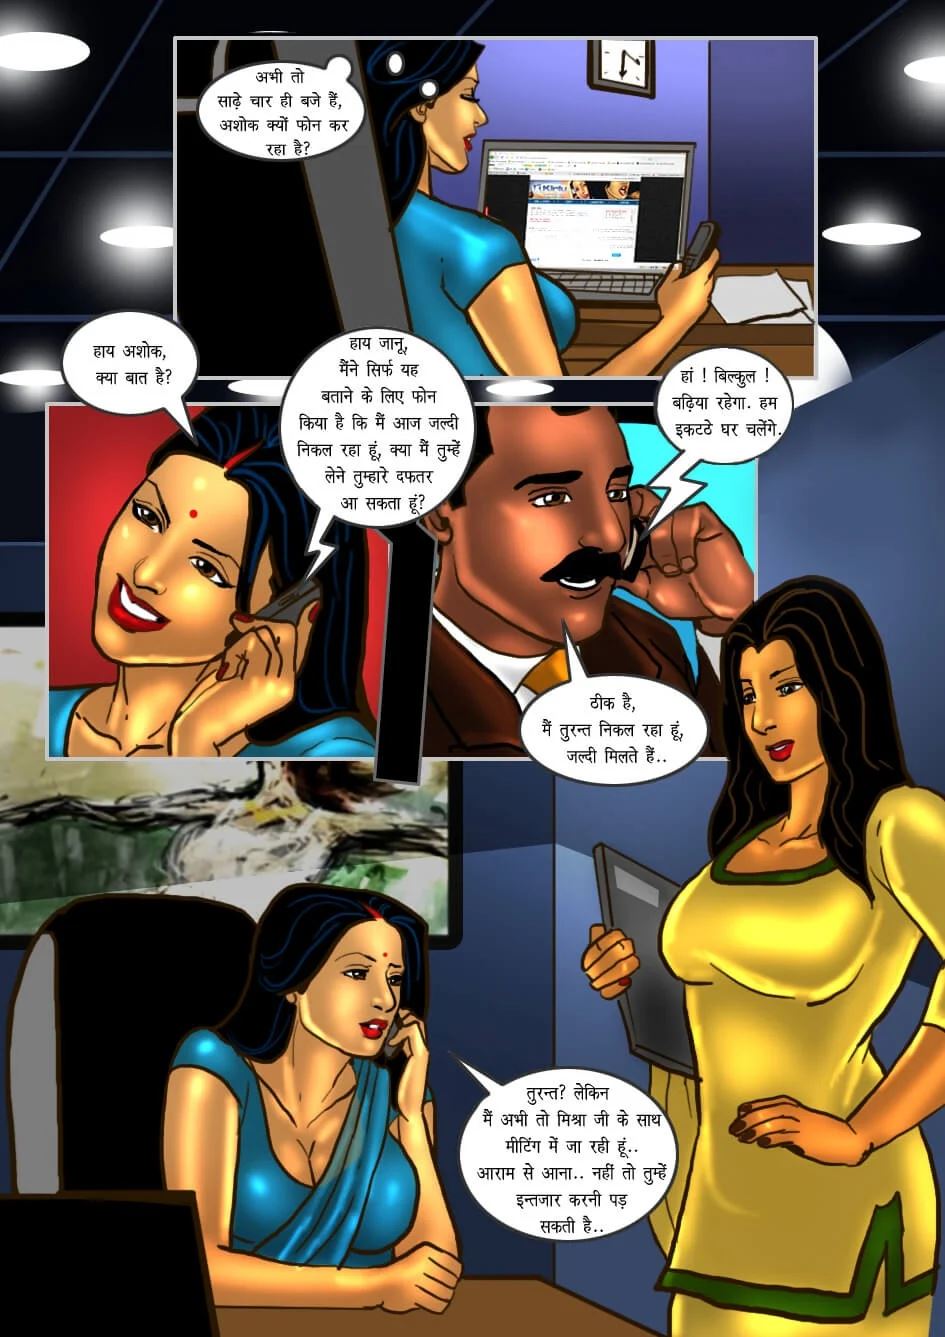 Savita Bhabhi Cartoon Hindi Language - Savita Bhabhi [Hindi] Porn Comics by [Kirtu] (Porn Comic) Rule 34 Comics â€“  R34Porn